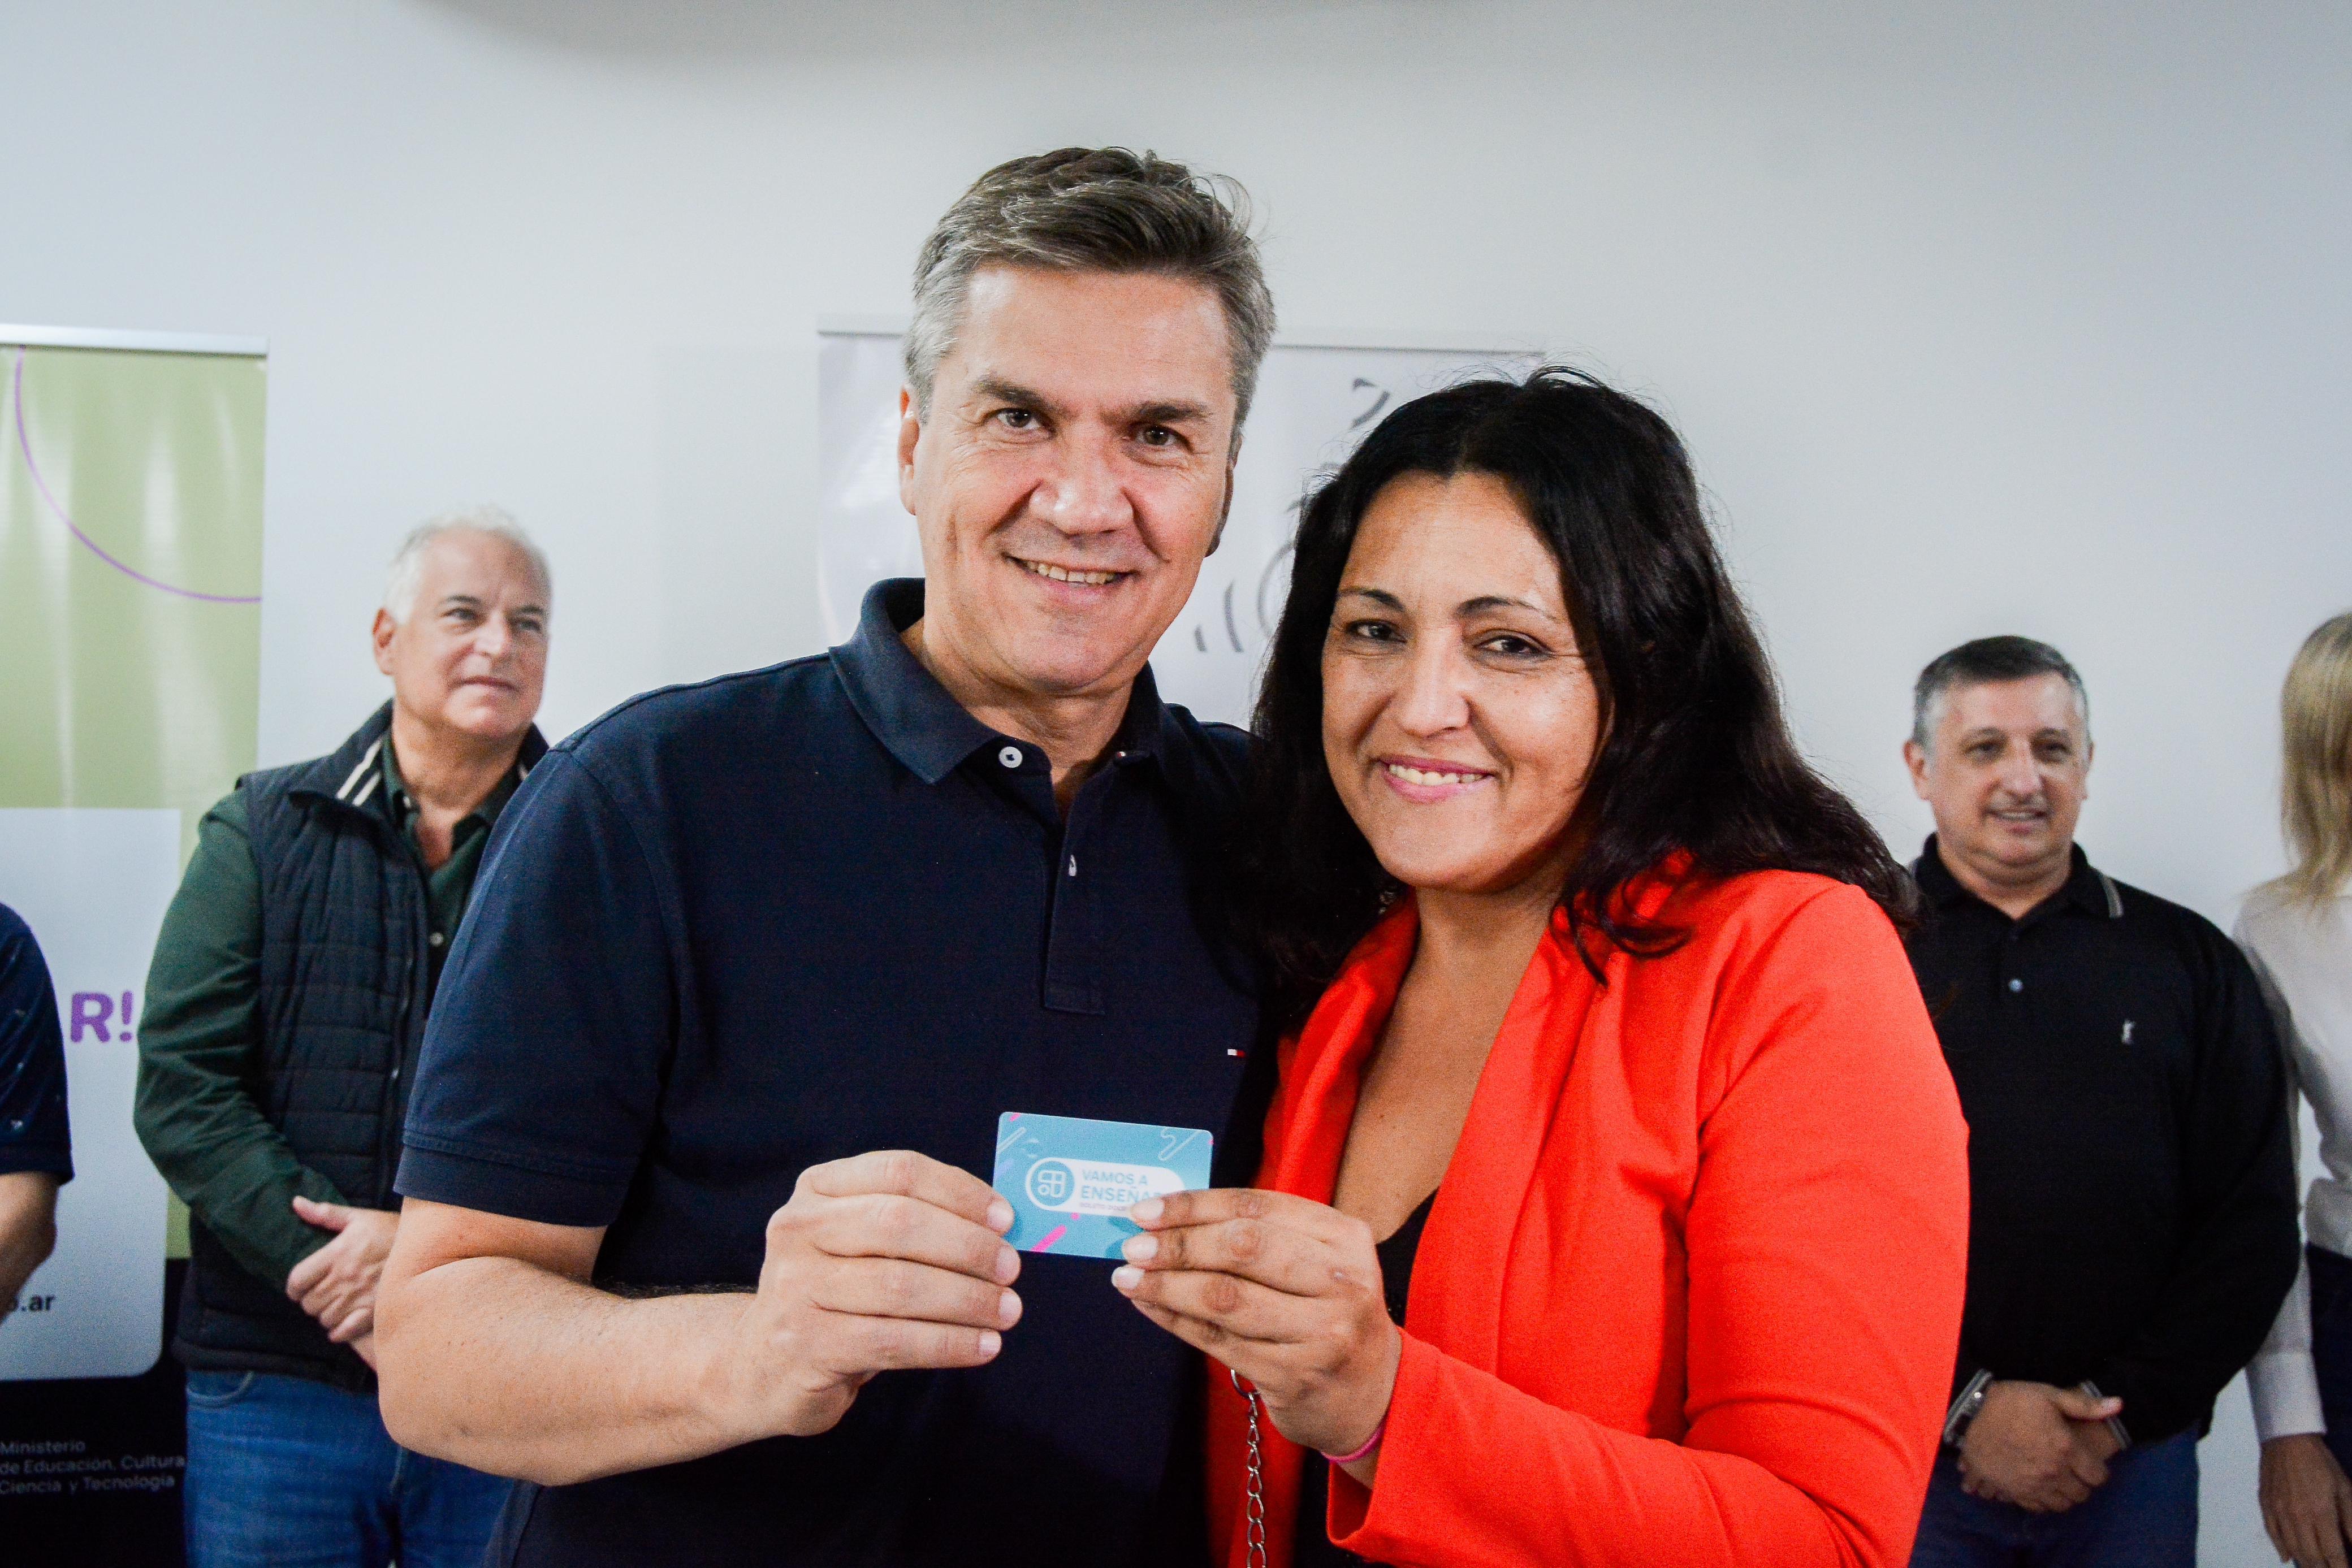 Entrega del boleto docente en Sáenz Peña: “apoyo fundamental para nuestros educadores”, dijo el Gobernador